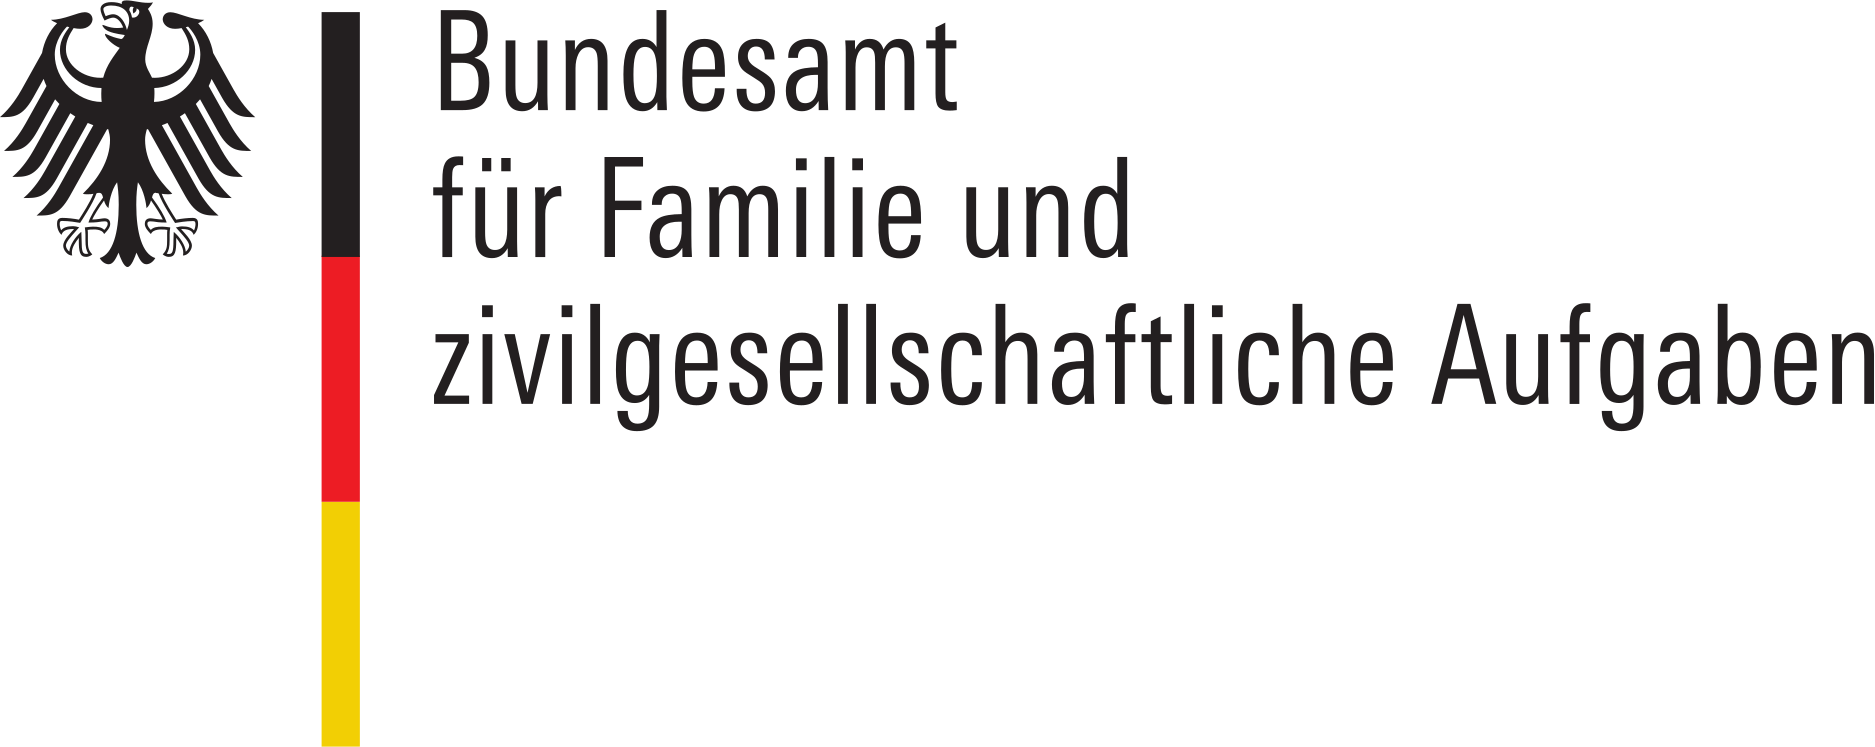 bundesamt fur familie und zivilgesellschaftliche aufgaben logo.svgb003638497